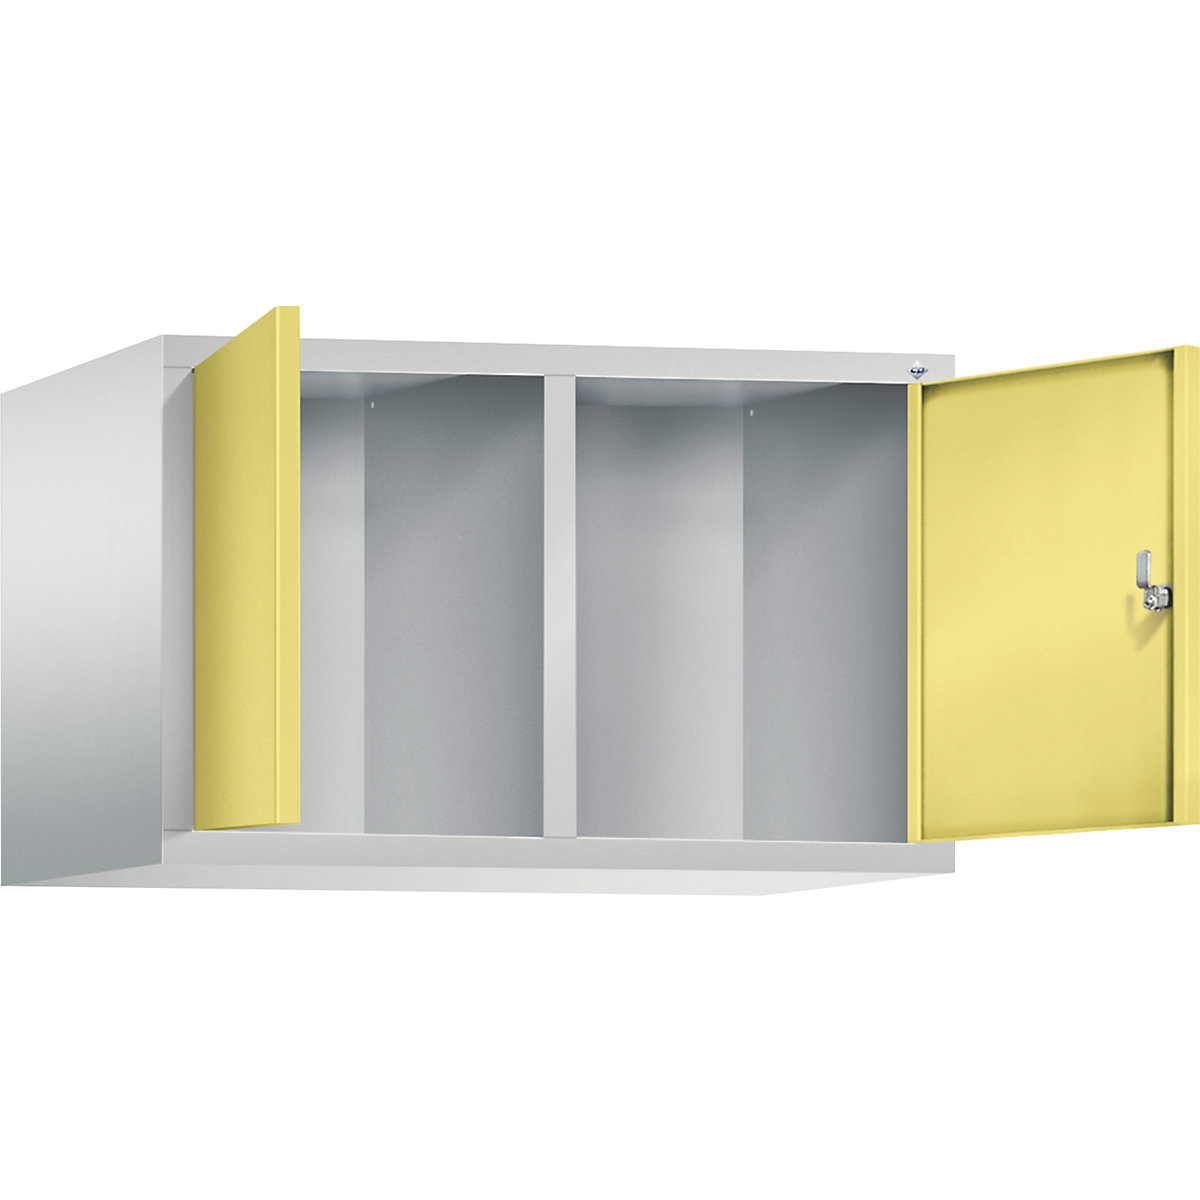 C+P – Dogradni ormar CLASSIC, vrata koja se zatvaraju jedna prema drugima, 2 odjela, širina odjela 400 mm, u svijetlosivoj / sumpor žutoj boji